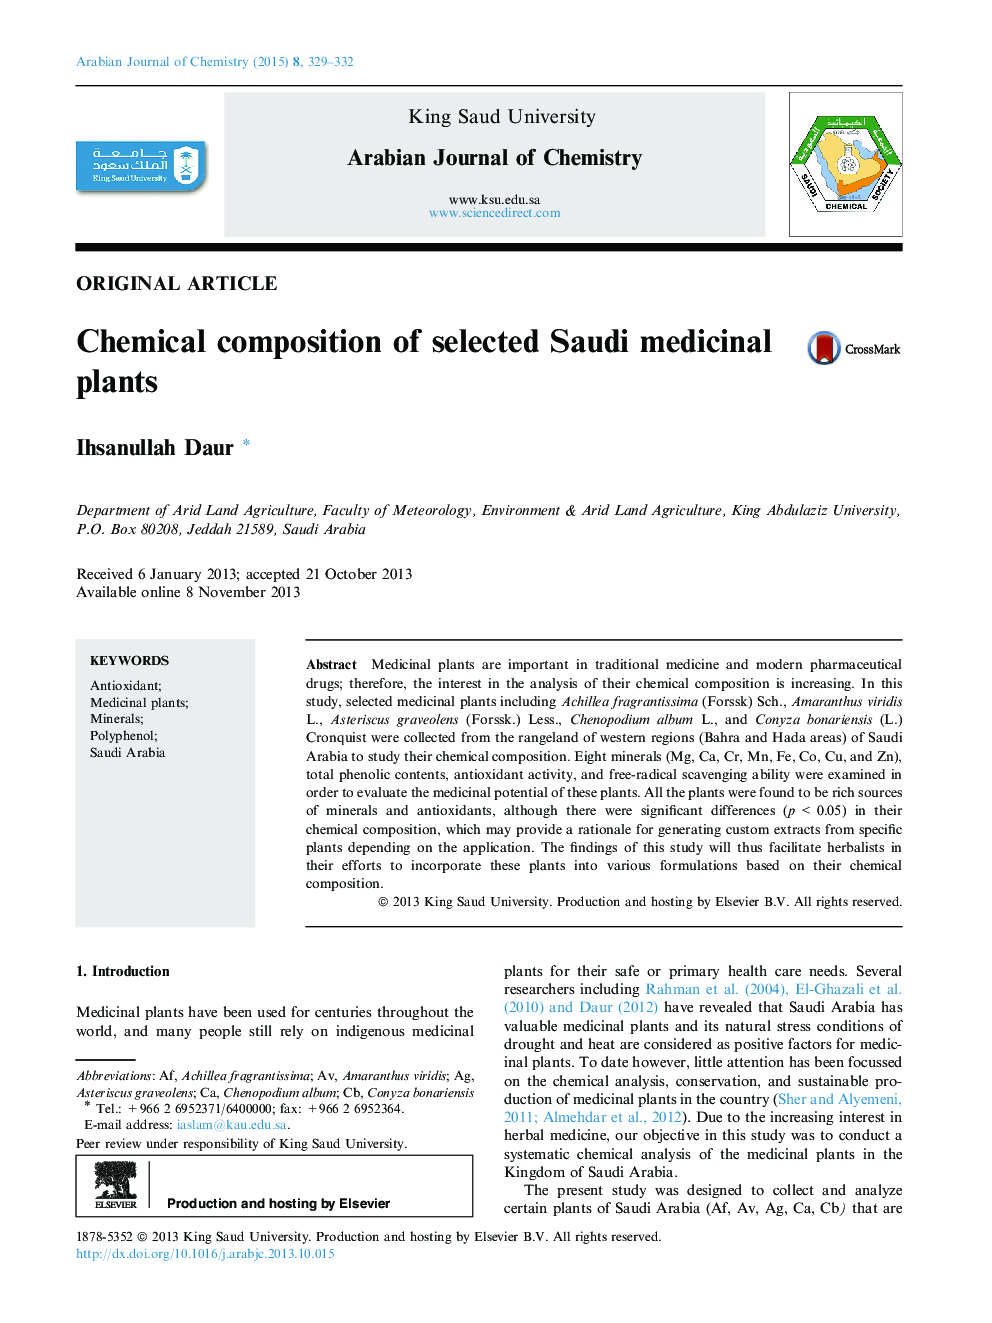 ترکیب شیمیایی گیاهان دارویی انتخاب شده عربستان 